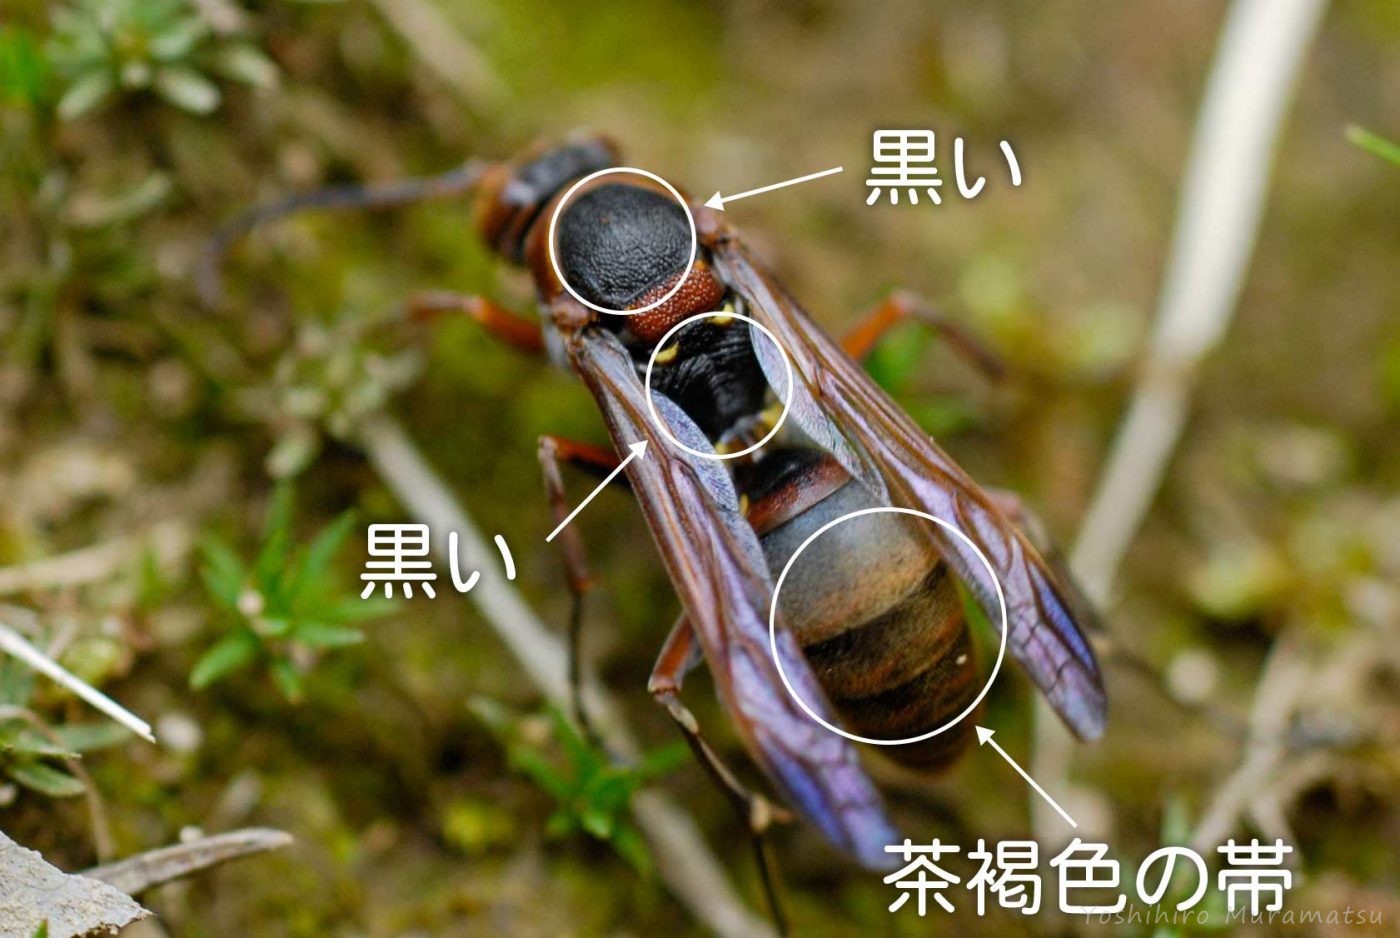 キボシアシナガバチの解説の画像